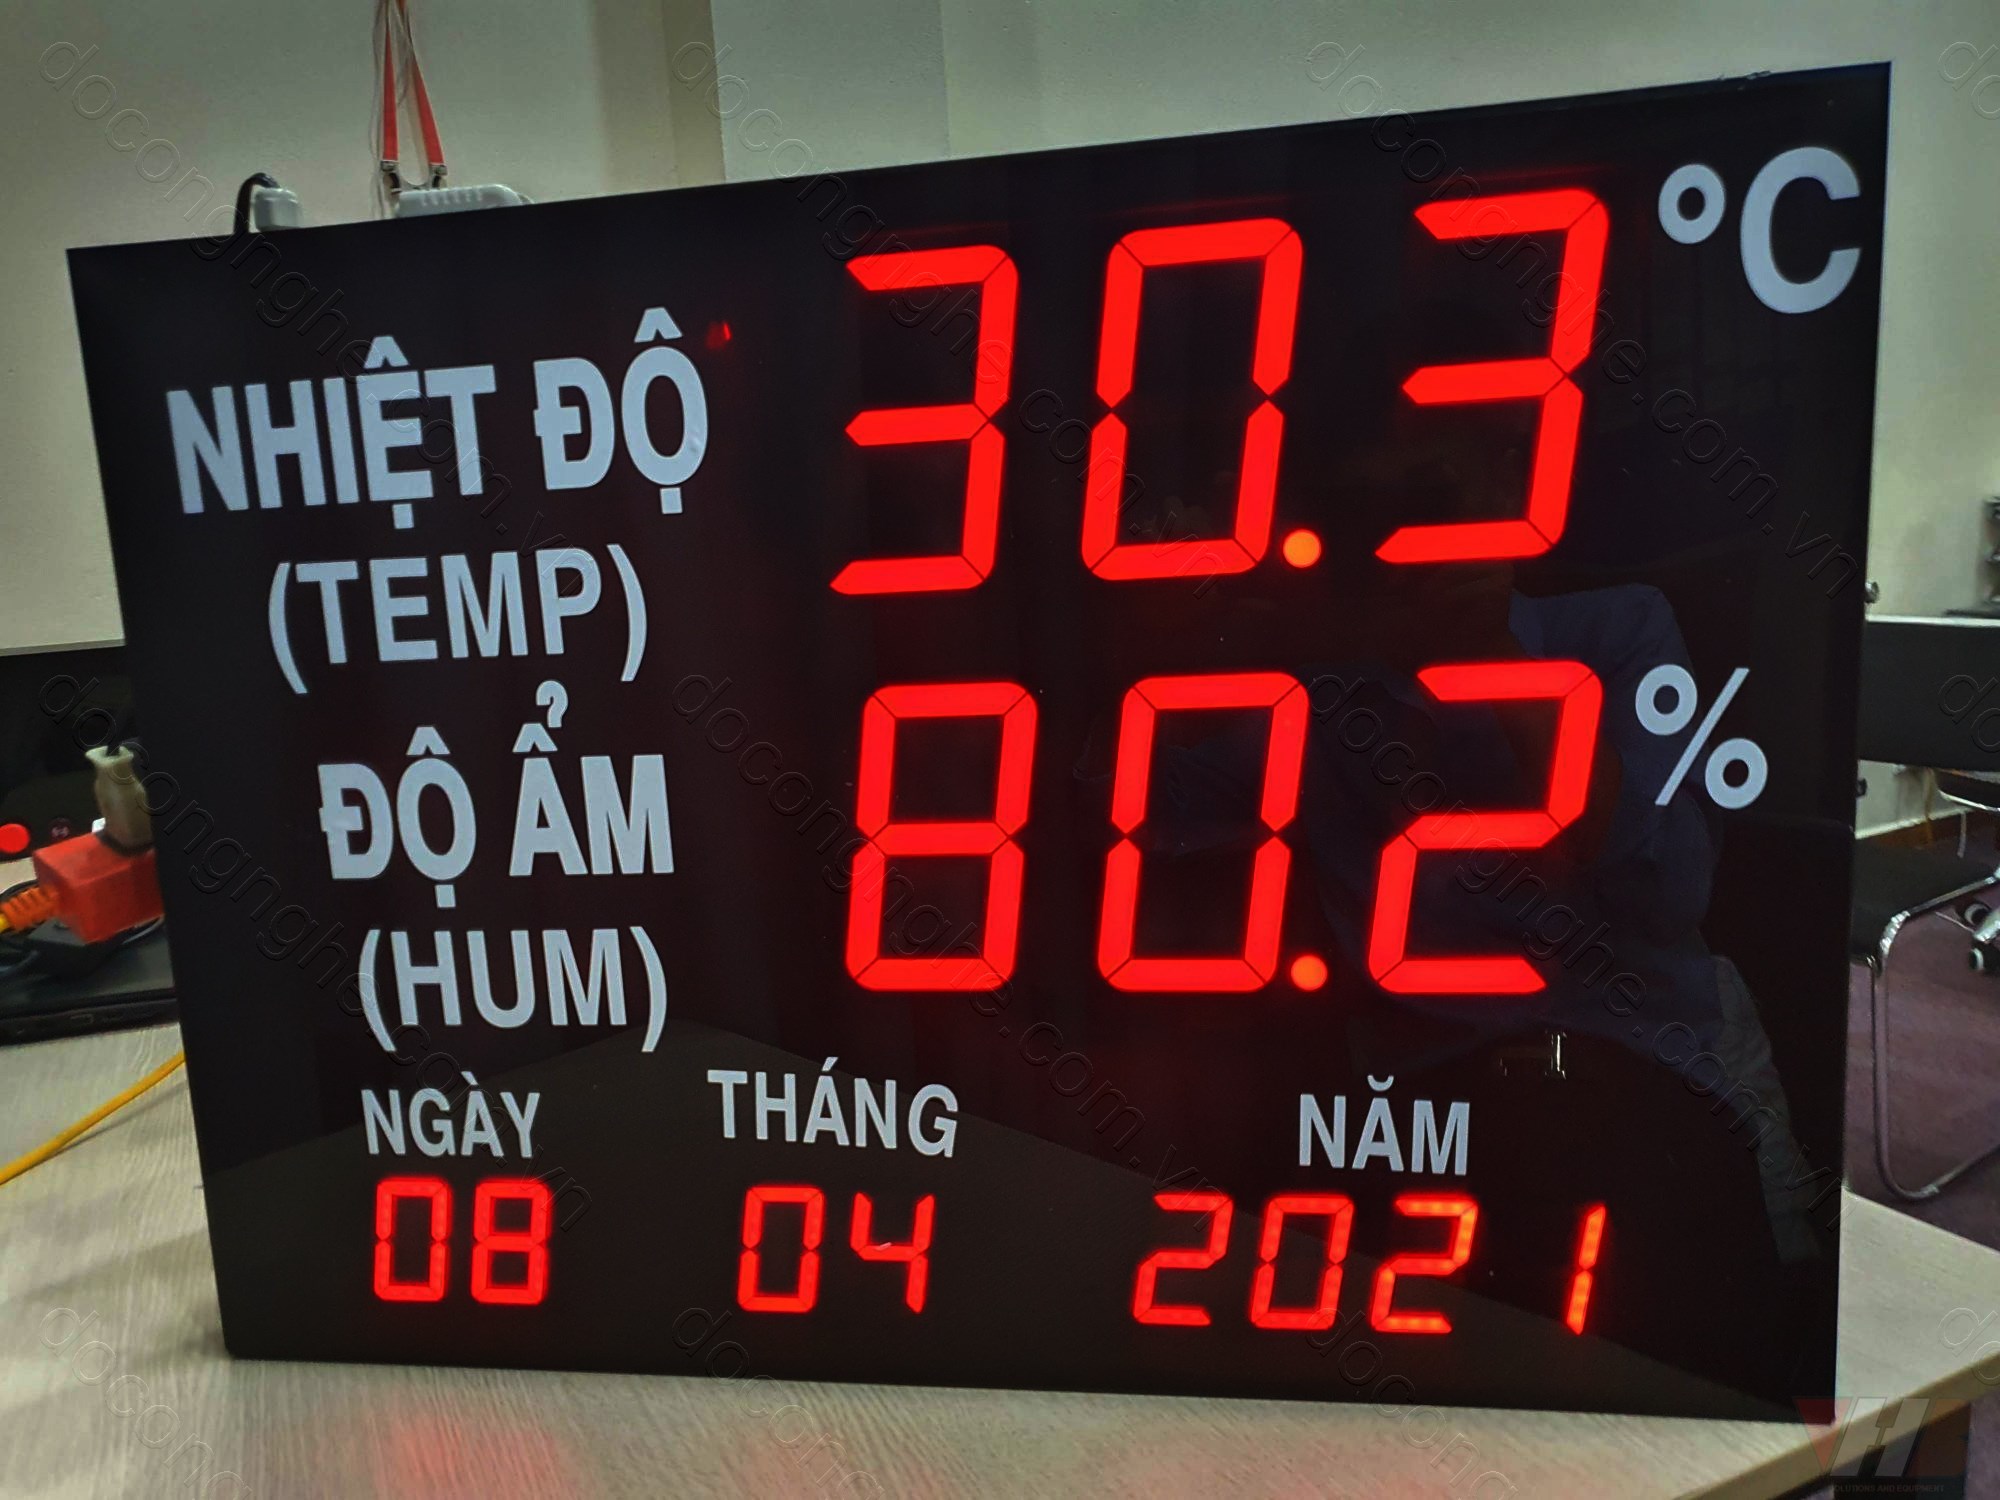 bảng led hiển thị nhiệt độ vhb